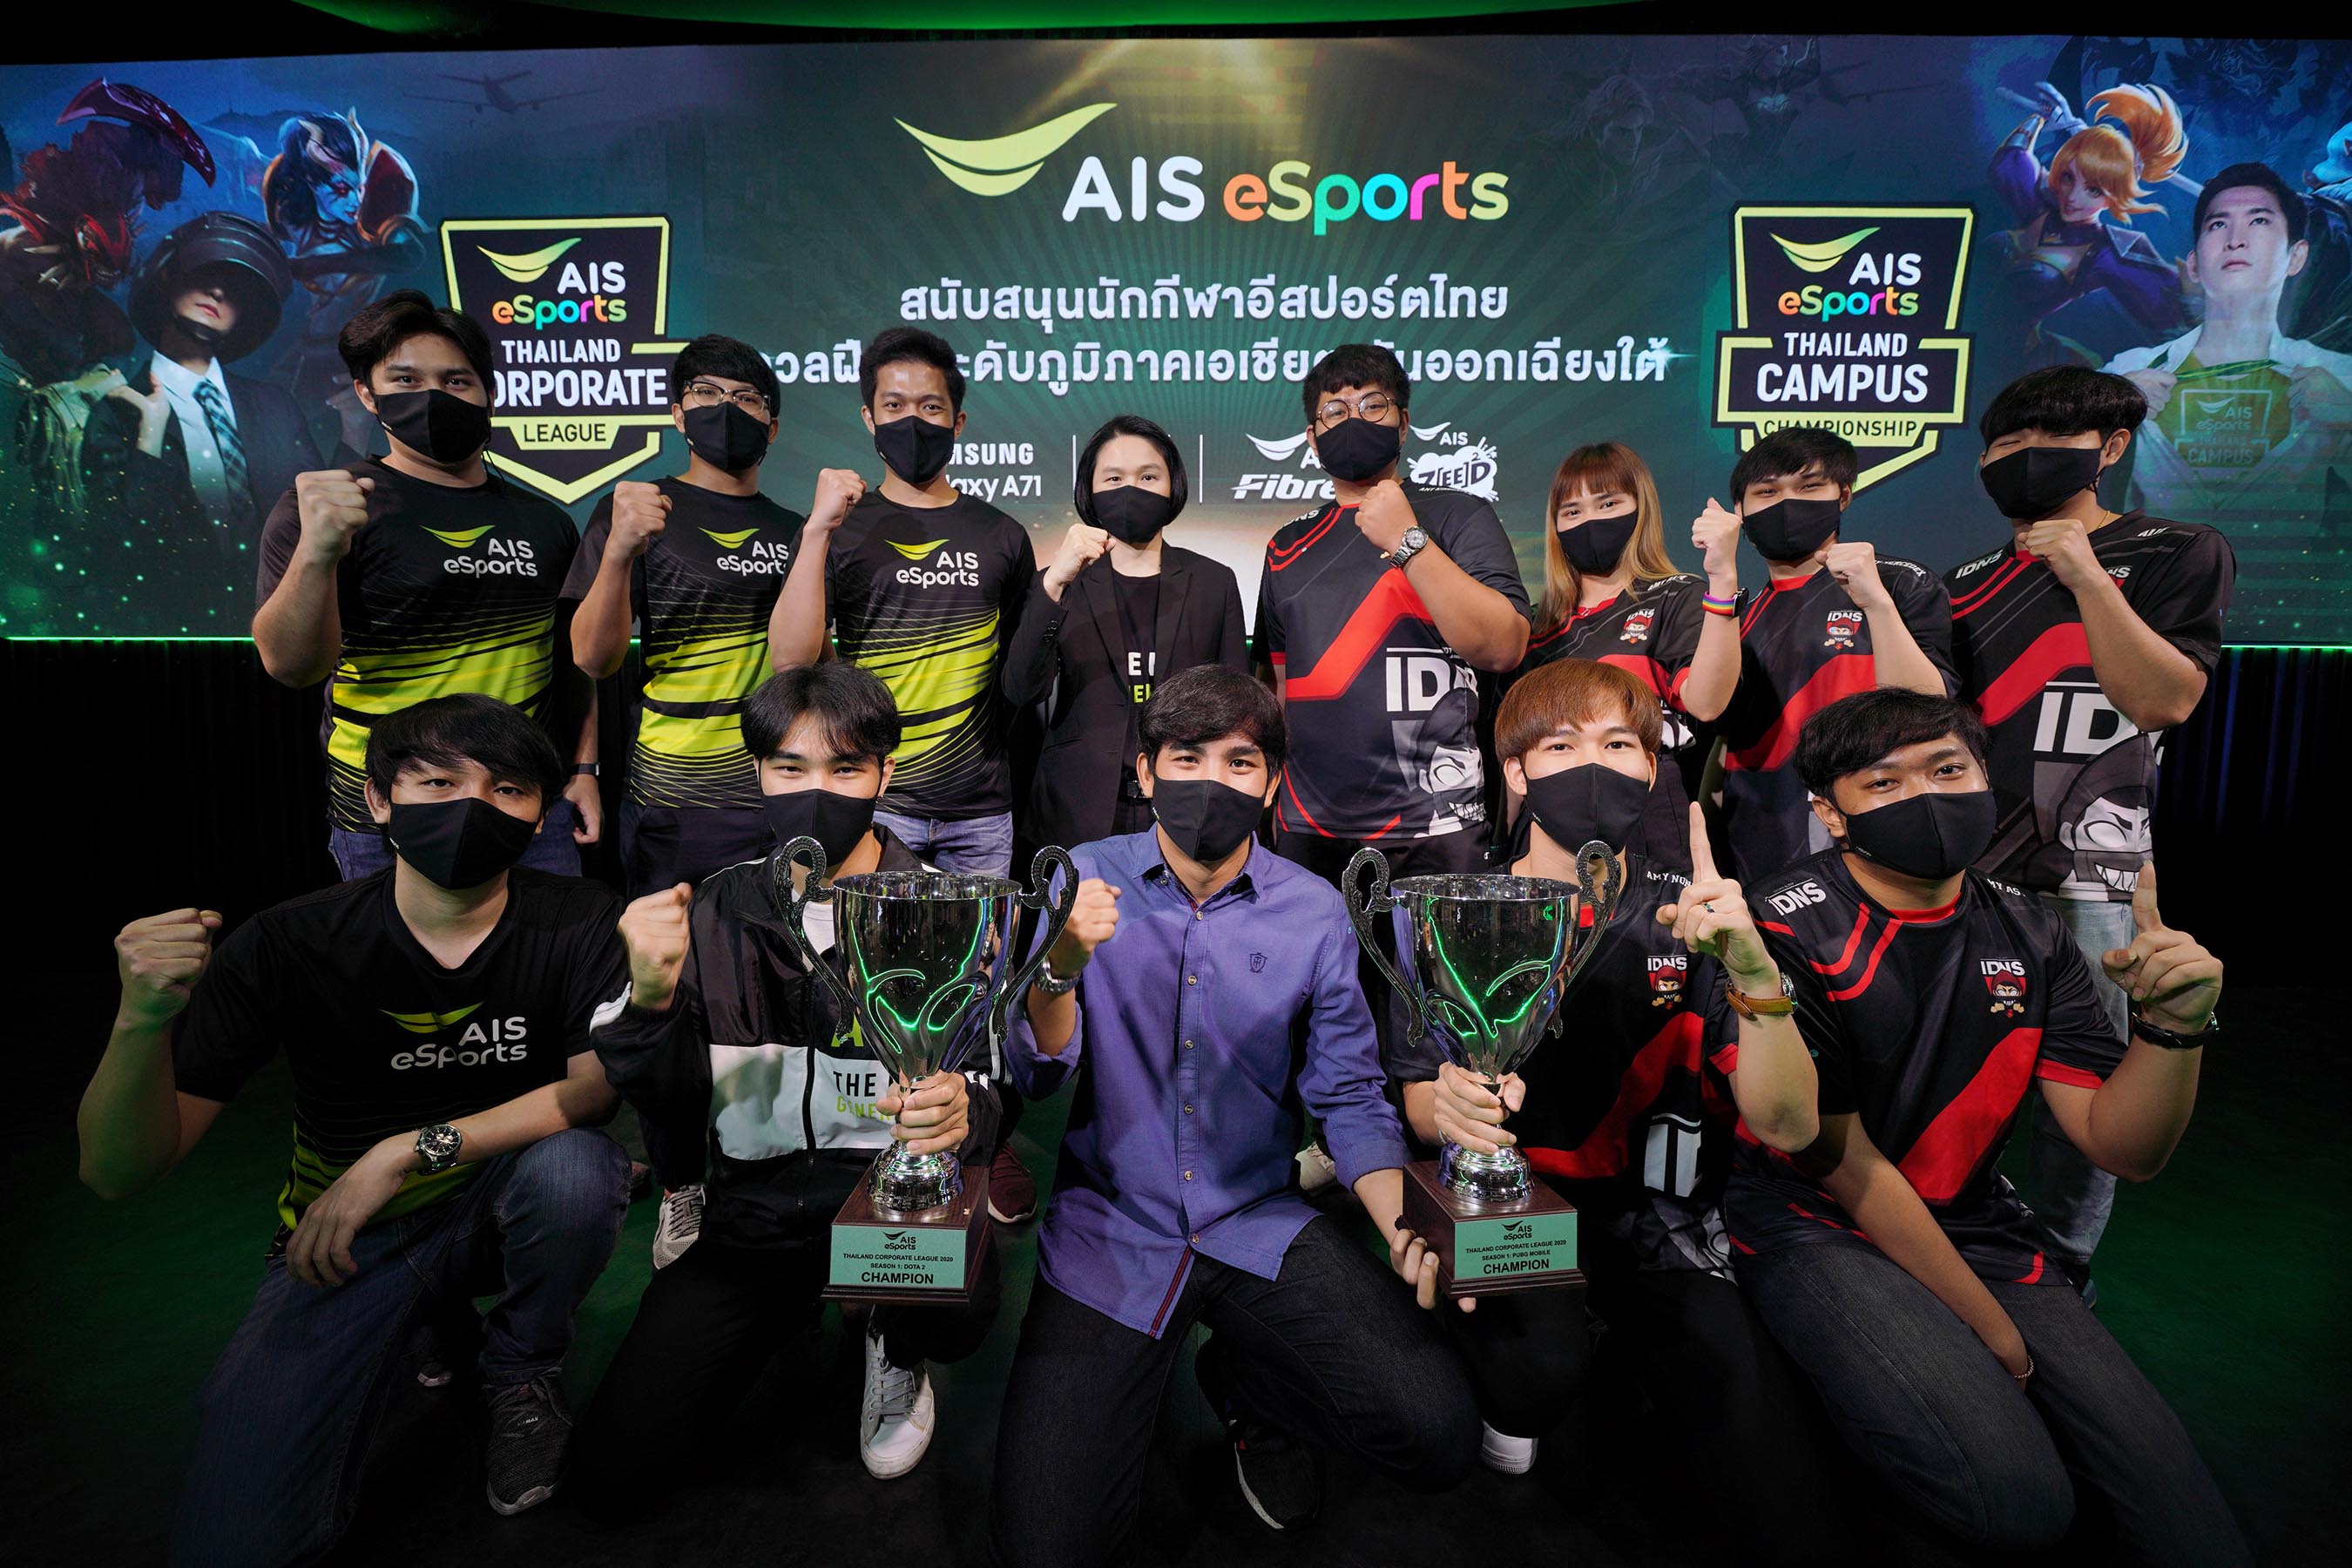 จัดเต็ม! AIS เปิดสนาม AIS eSports STUDIO หนุนนักกีฬาอีสปอร์ตไทยดวลฝีมือเตรียมชิงชัยศึกอีสปอร์ตระดับภูมิภาคเอเชียตะวันออกเฉียงใต้